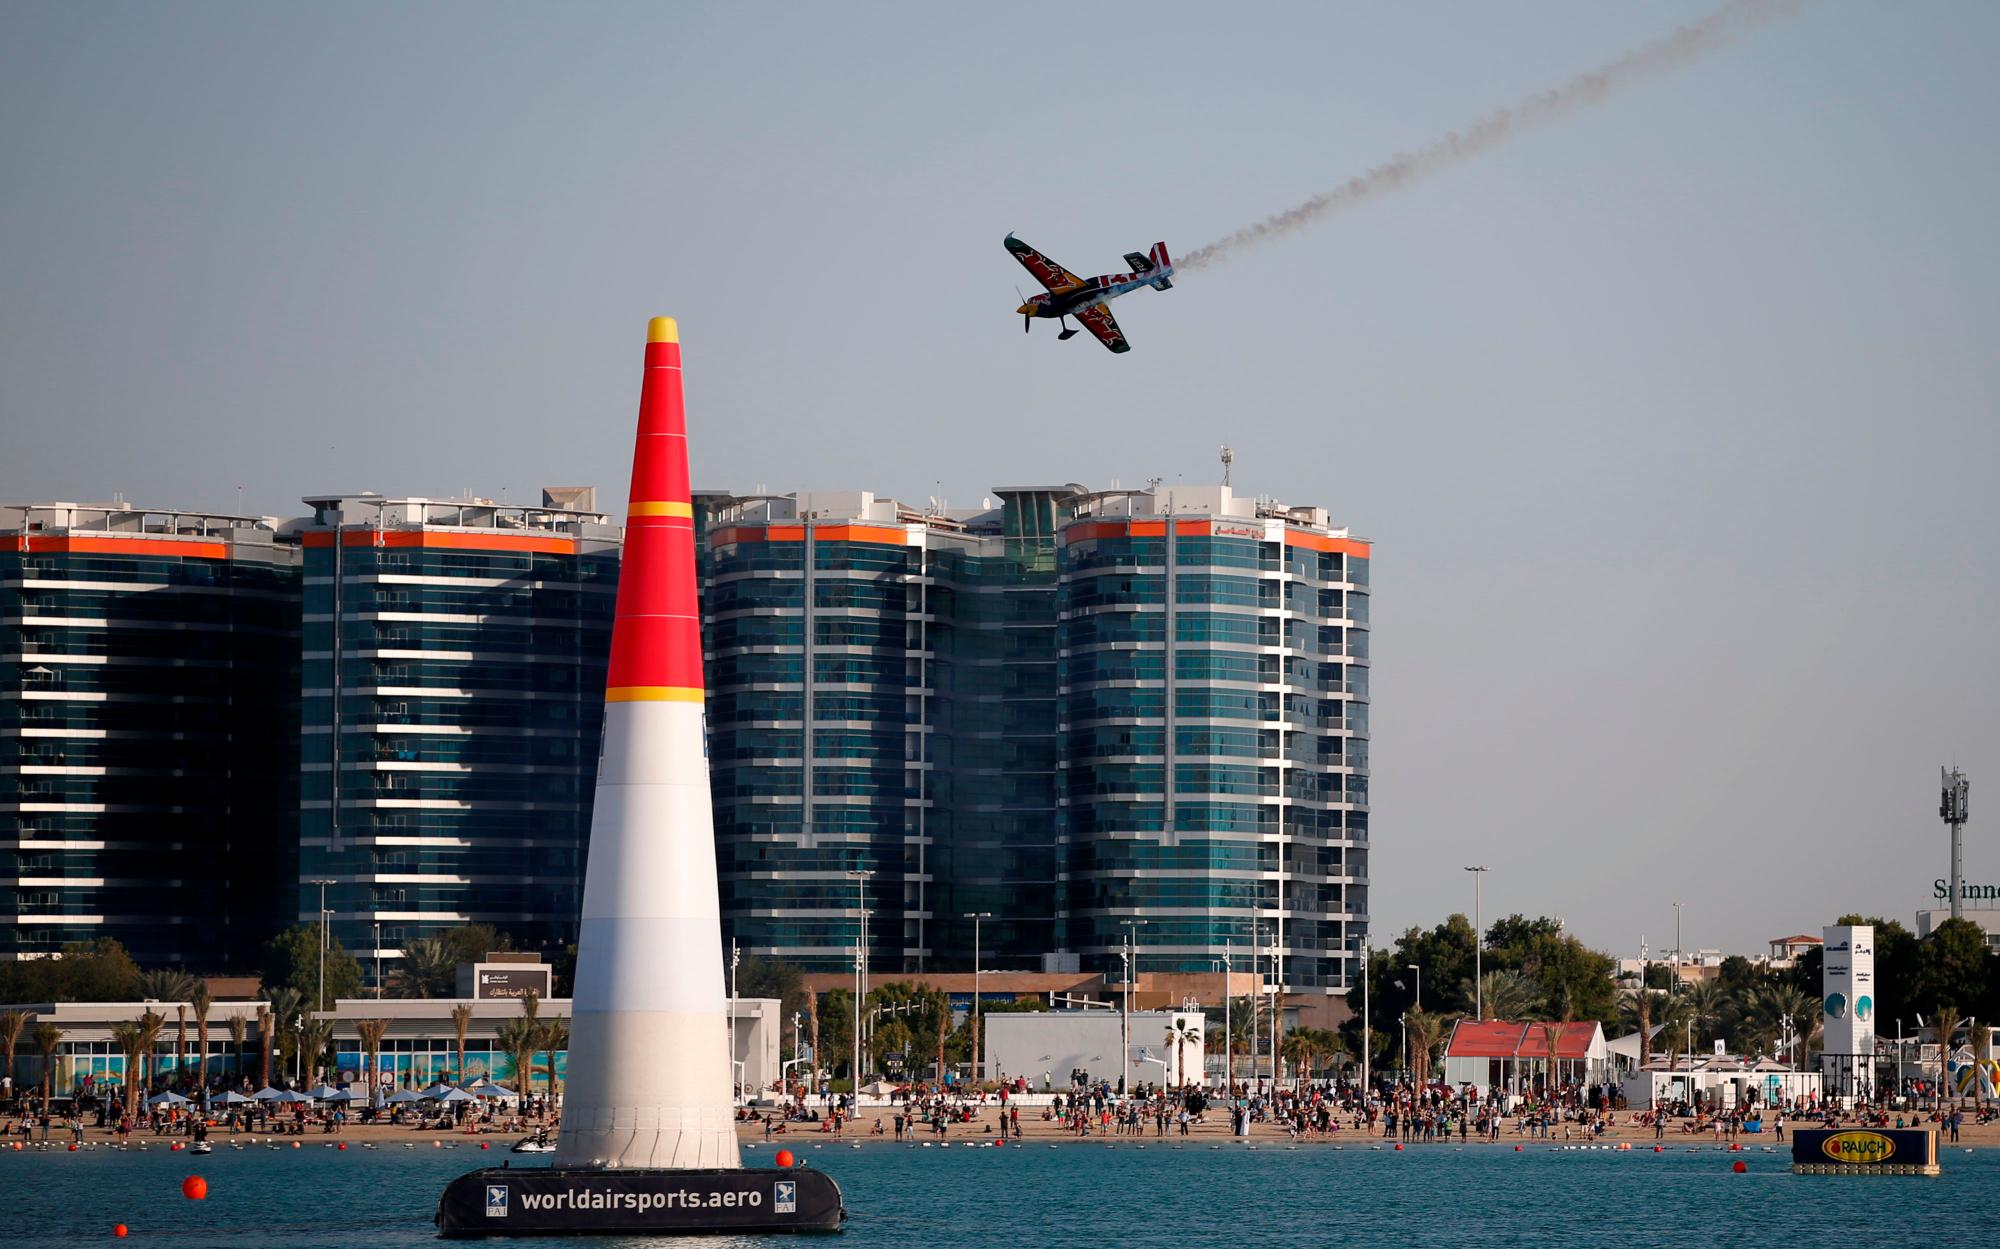 Abu Dhabi (Emiratos Árabes Unidos), 09/02 / 2019.- Martin Sonka, ganador de la segunda posición, se presenta durante los cuatro últimos del Campeonato Mundial Red Bull Air Race en Abu Dhabi, Emiratos Árabes Unidos, 09 de febrero de 2019. (República Checa, Emiratos Árabes Unidos)